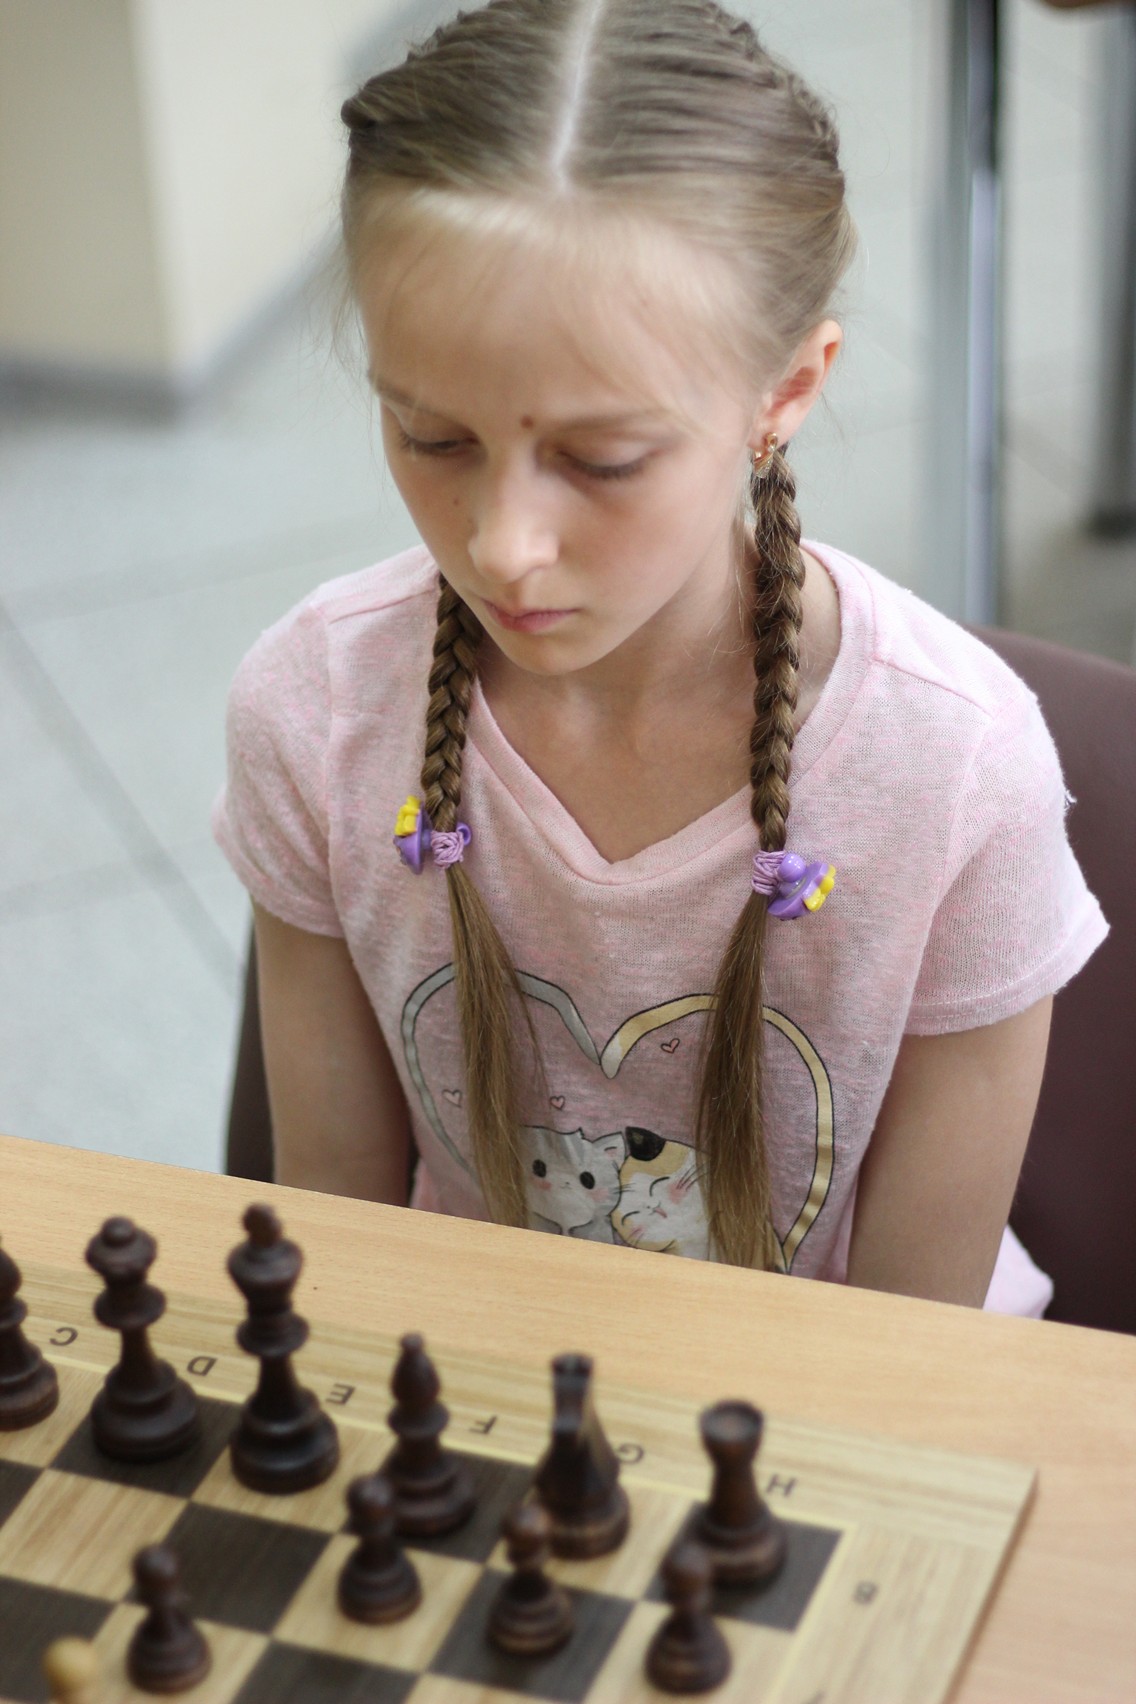 VII шахматный турнир "Волшебная ладья"